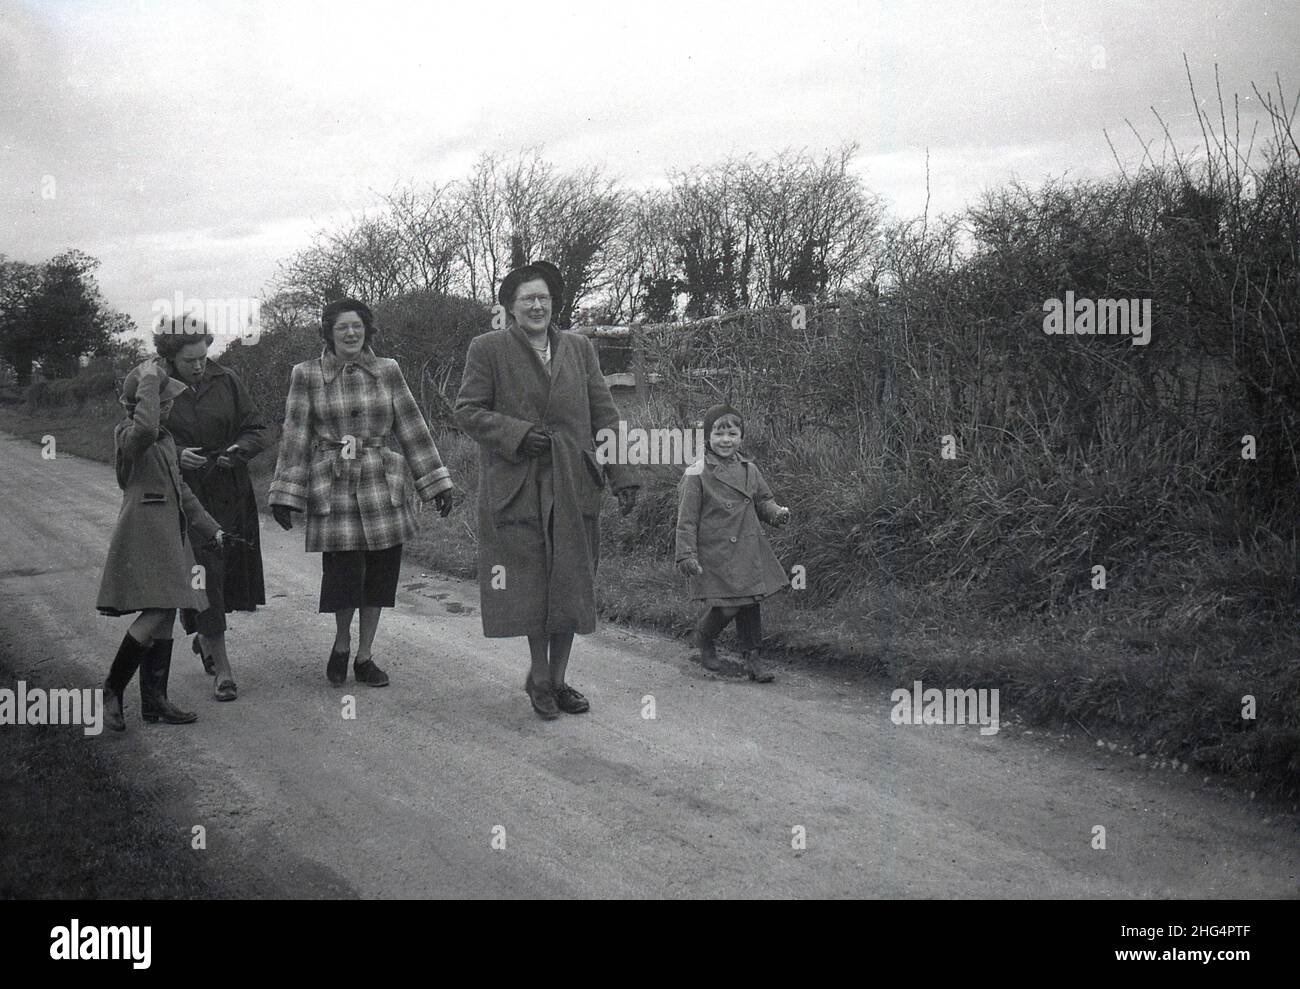 1950s, storica, fuori su una pista o una corsia rurale, due madri e una nonna, indossando cappotti per una passeggiata diurna con i loro figli, due ragazze giovani, entrambe indossando wellies, Inghilterra, Regno Unito. Foto Stock